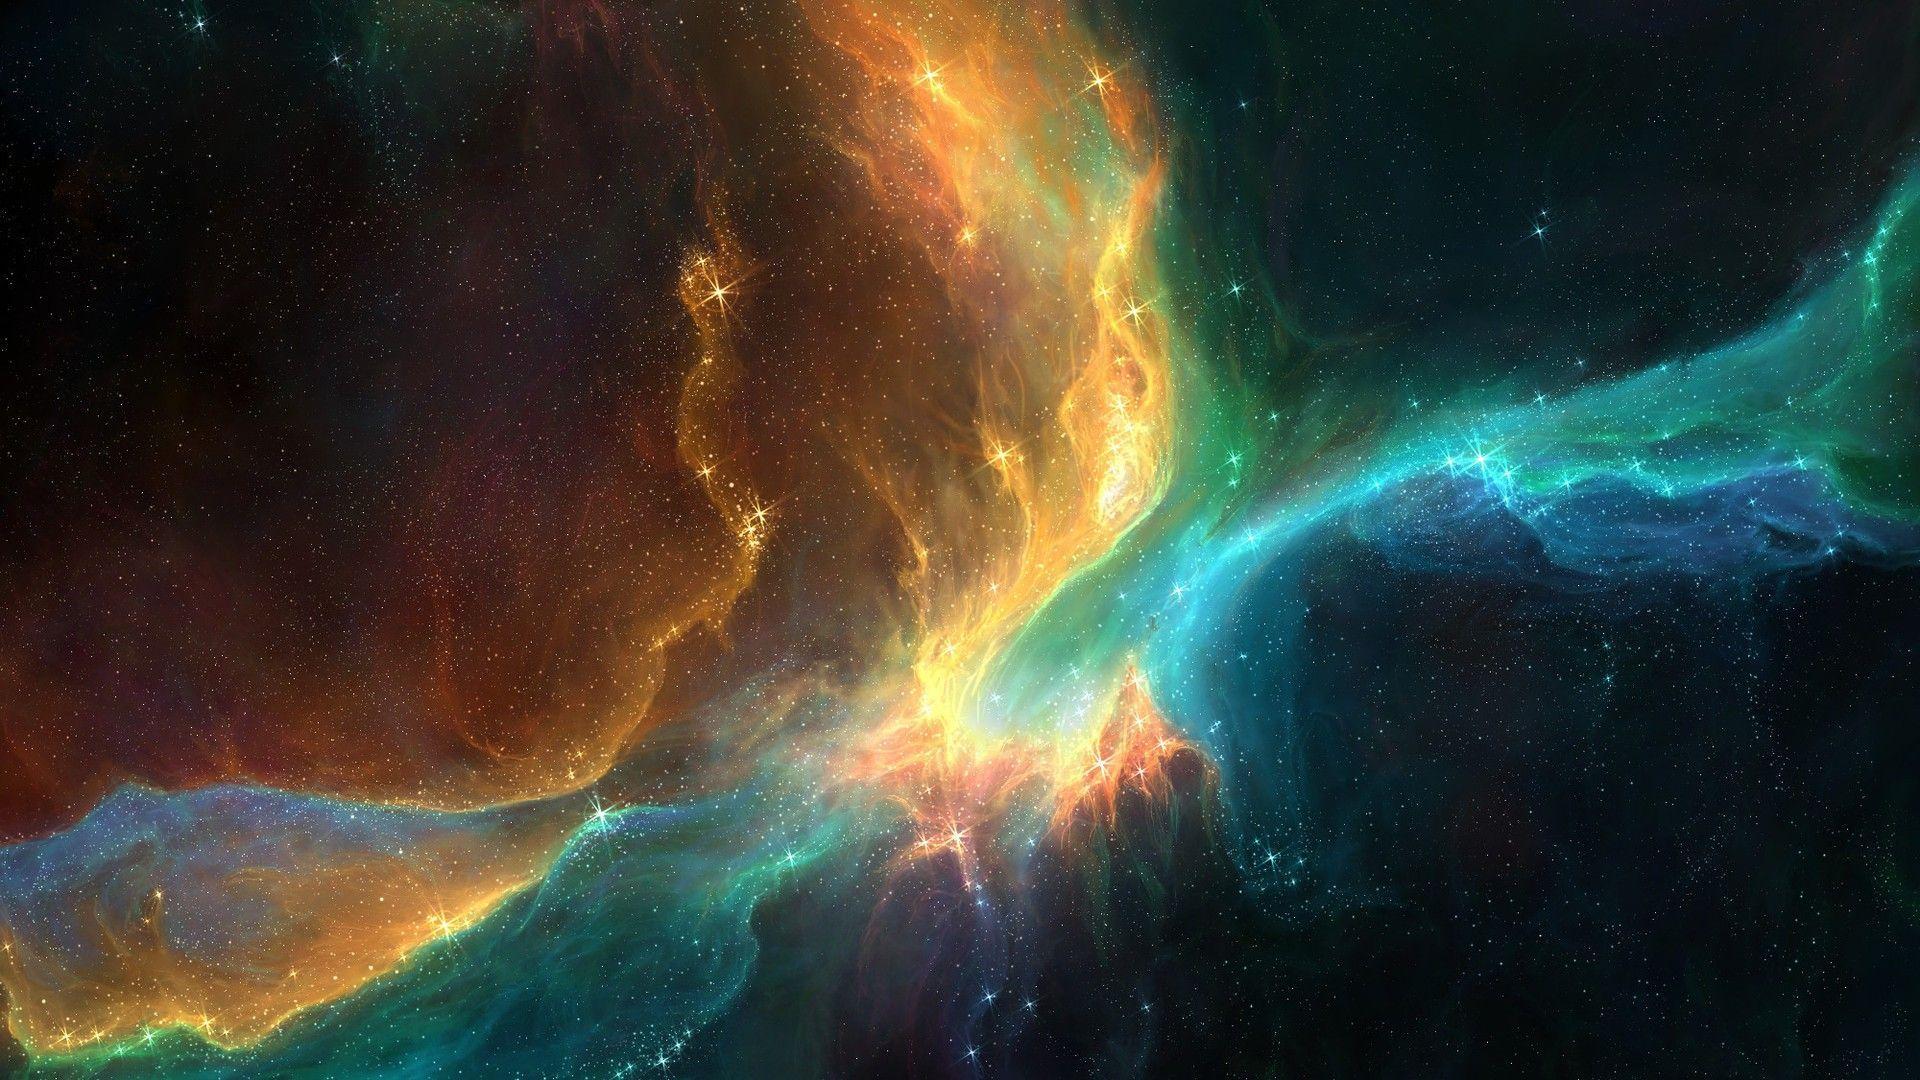 Helix Nebula HD desktop wallpaper, Widescreen, High Definition